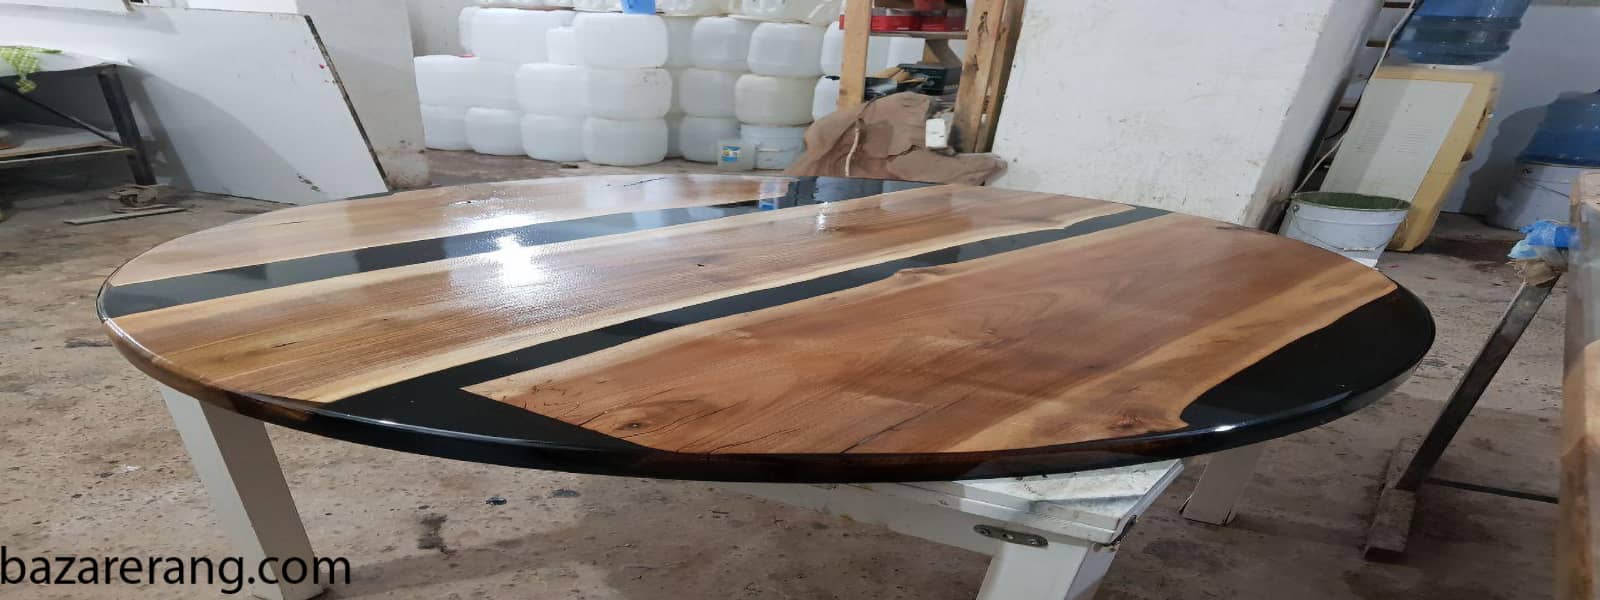 ساخت میز چوبی با رزین اپوکسی چوب